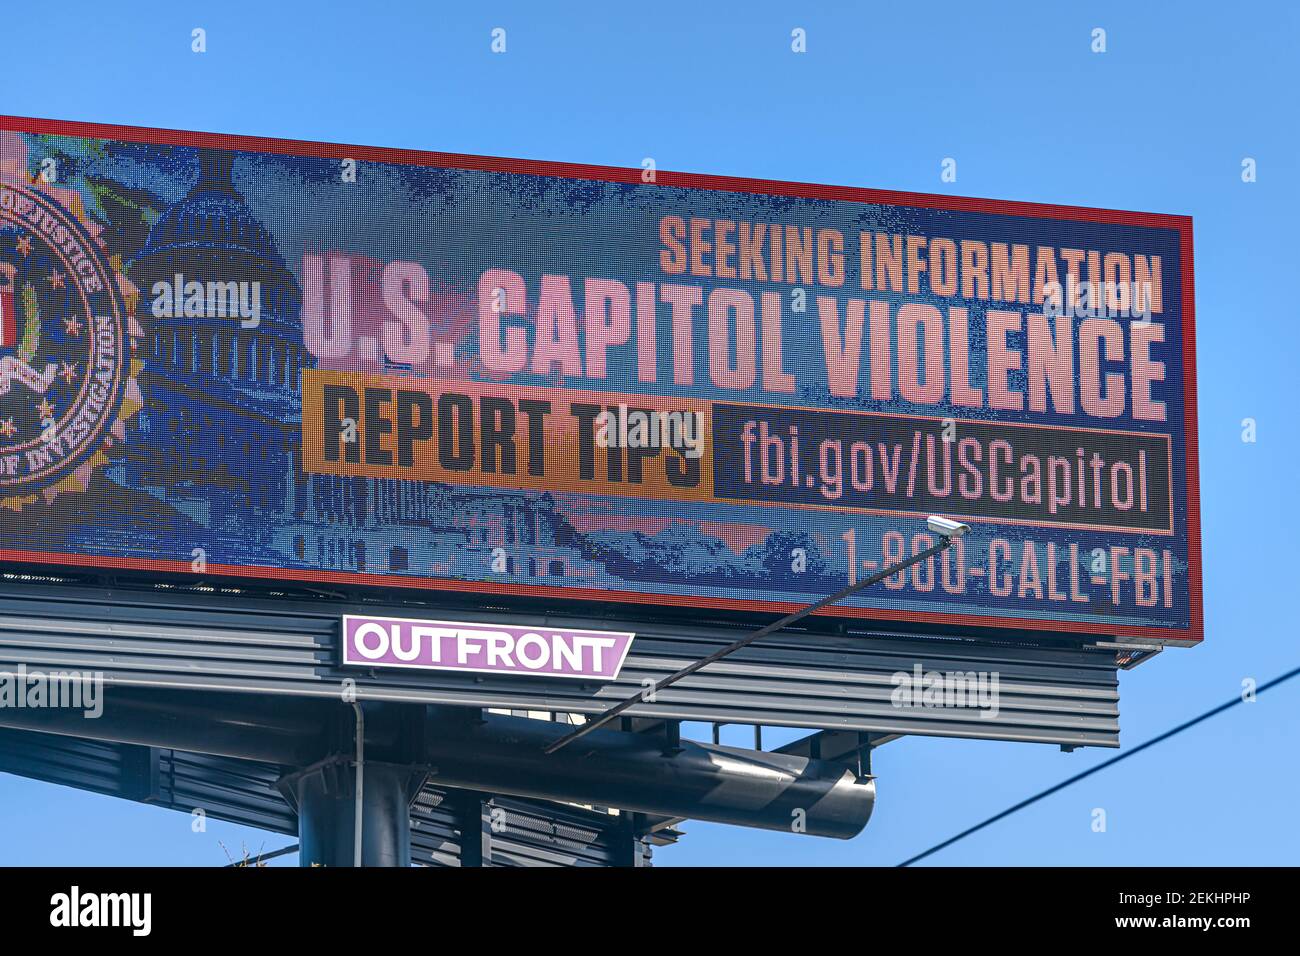 Orlando, USA - 16. Januar 2021: Florida Highway Road Sign Text für die Suche nach Informationen über US-Kapitol Gewalt von fbi-Justizministerium Stockfoto